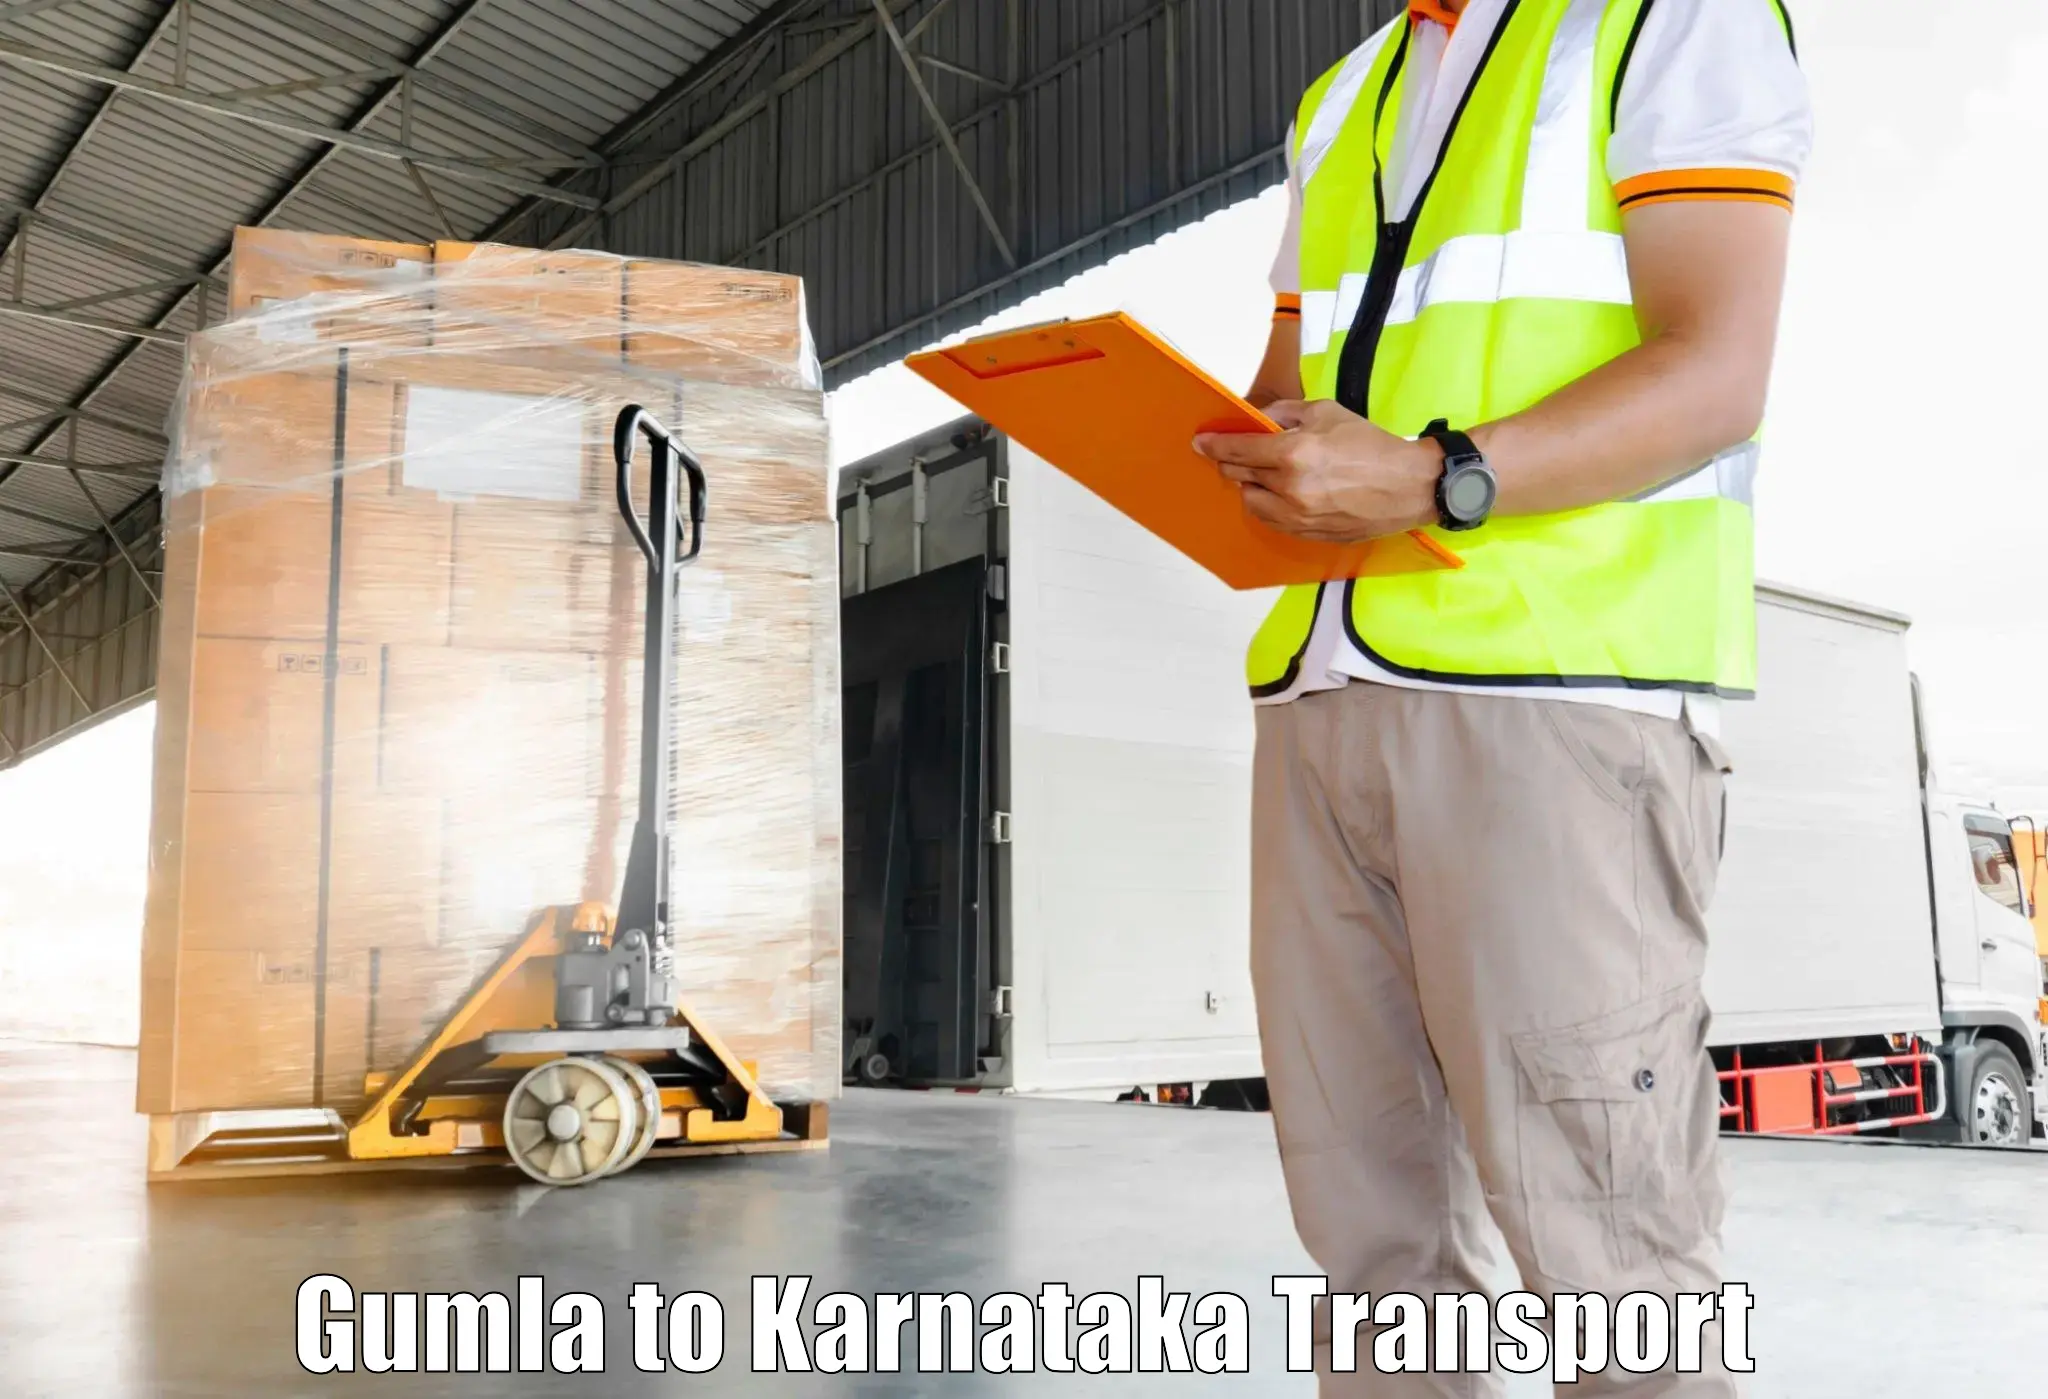 Parcel transport services Gumla to Sagara